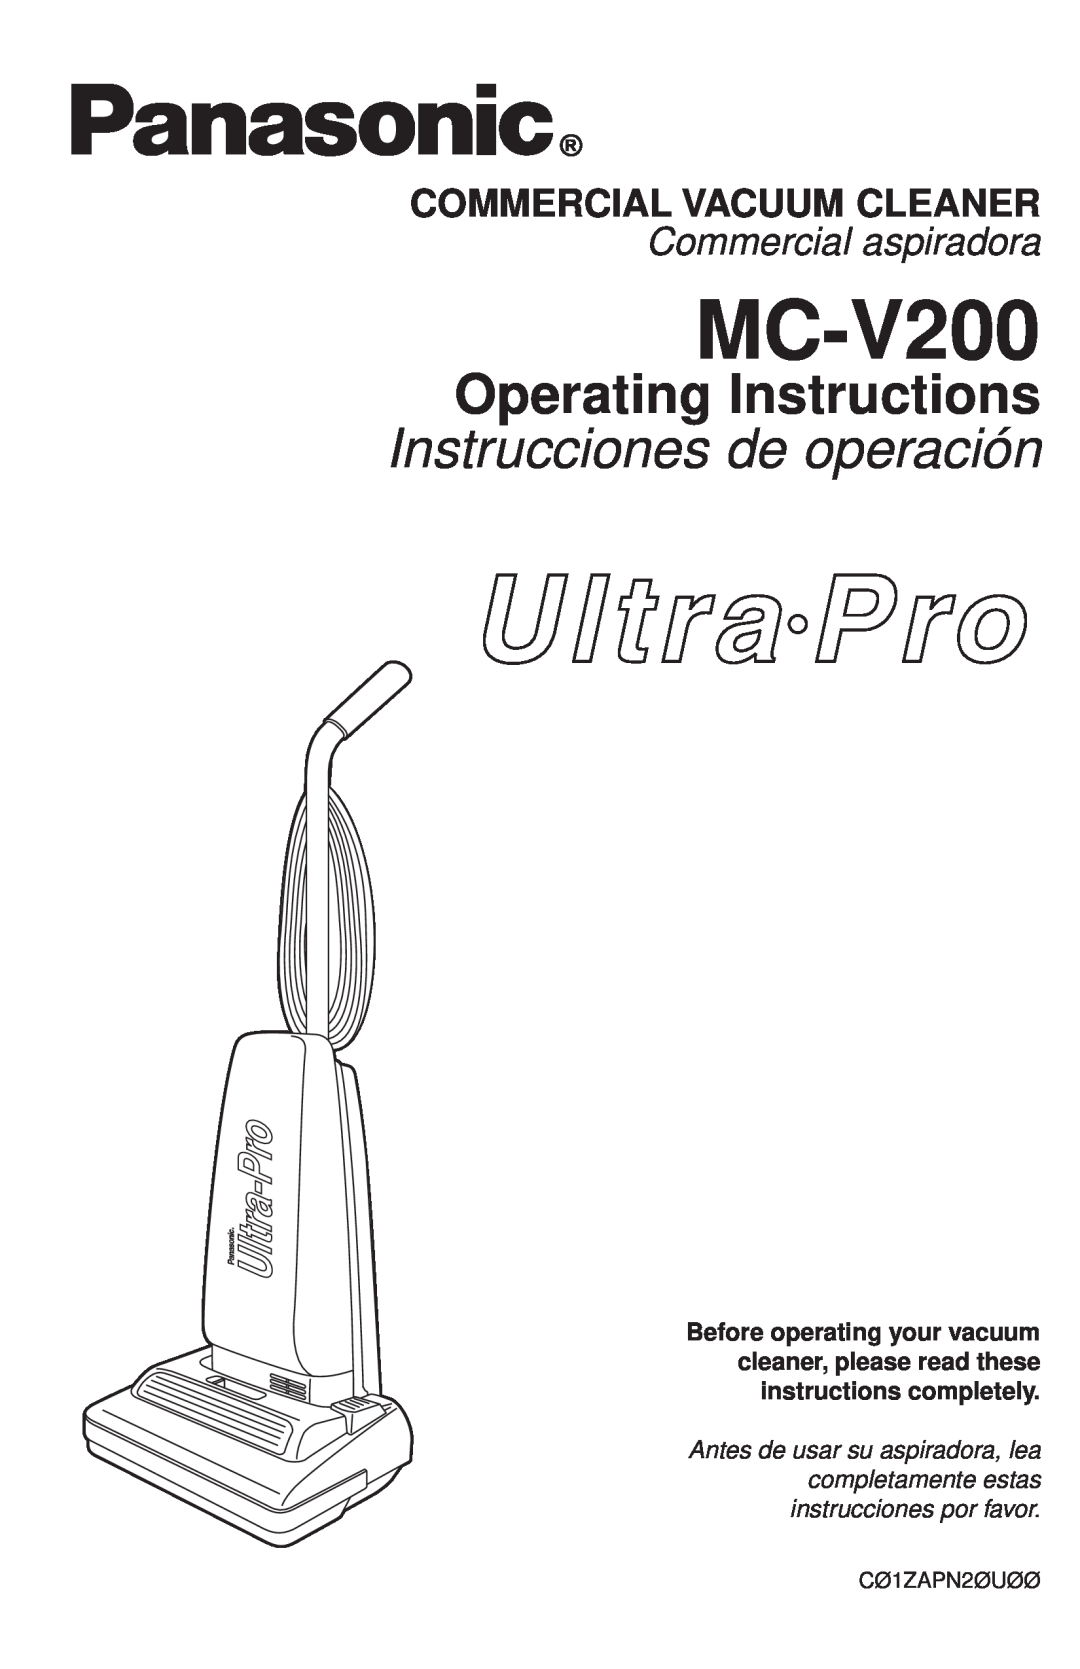 Panasonic MC-V200 manual Operating Instructions, Instrucciones de operación, Commercial Vacuum Cleaner 